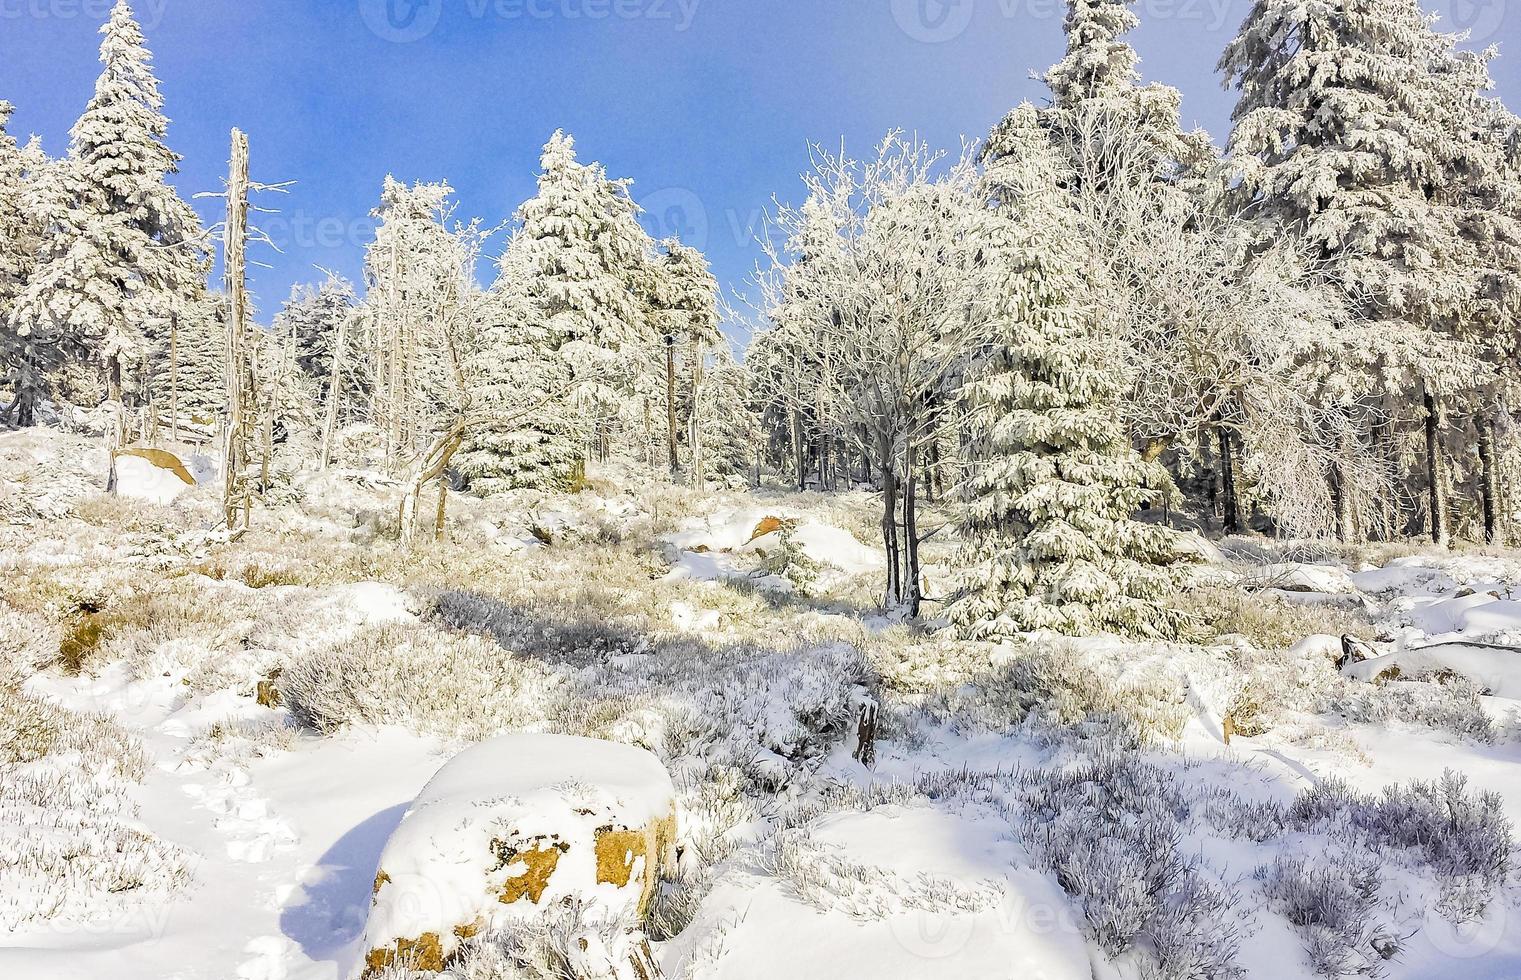 schneebedeckte Bäume im Brocken, Harzgebirge, Deutschland foto